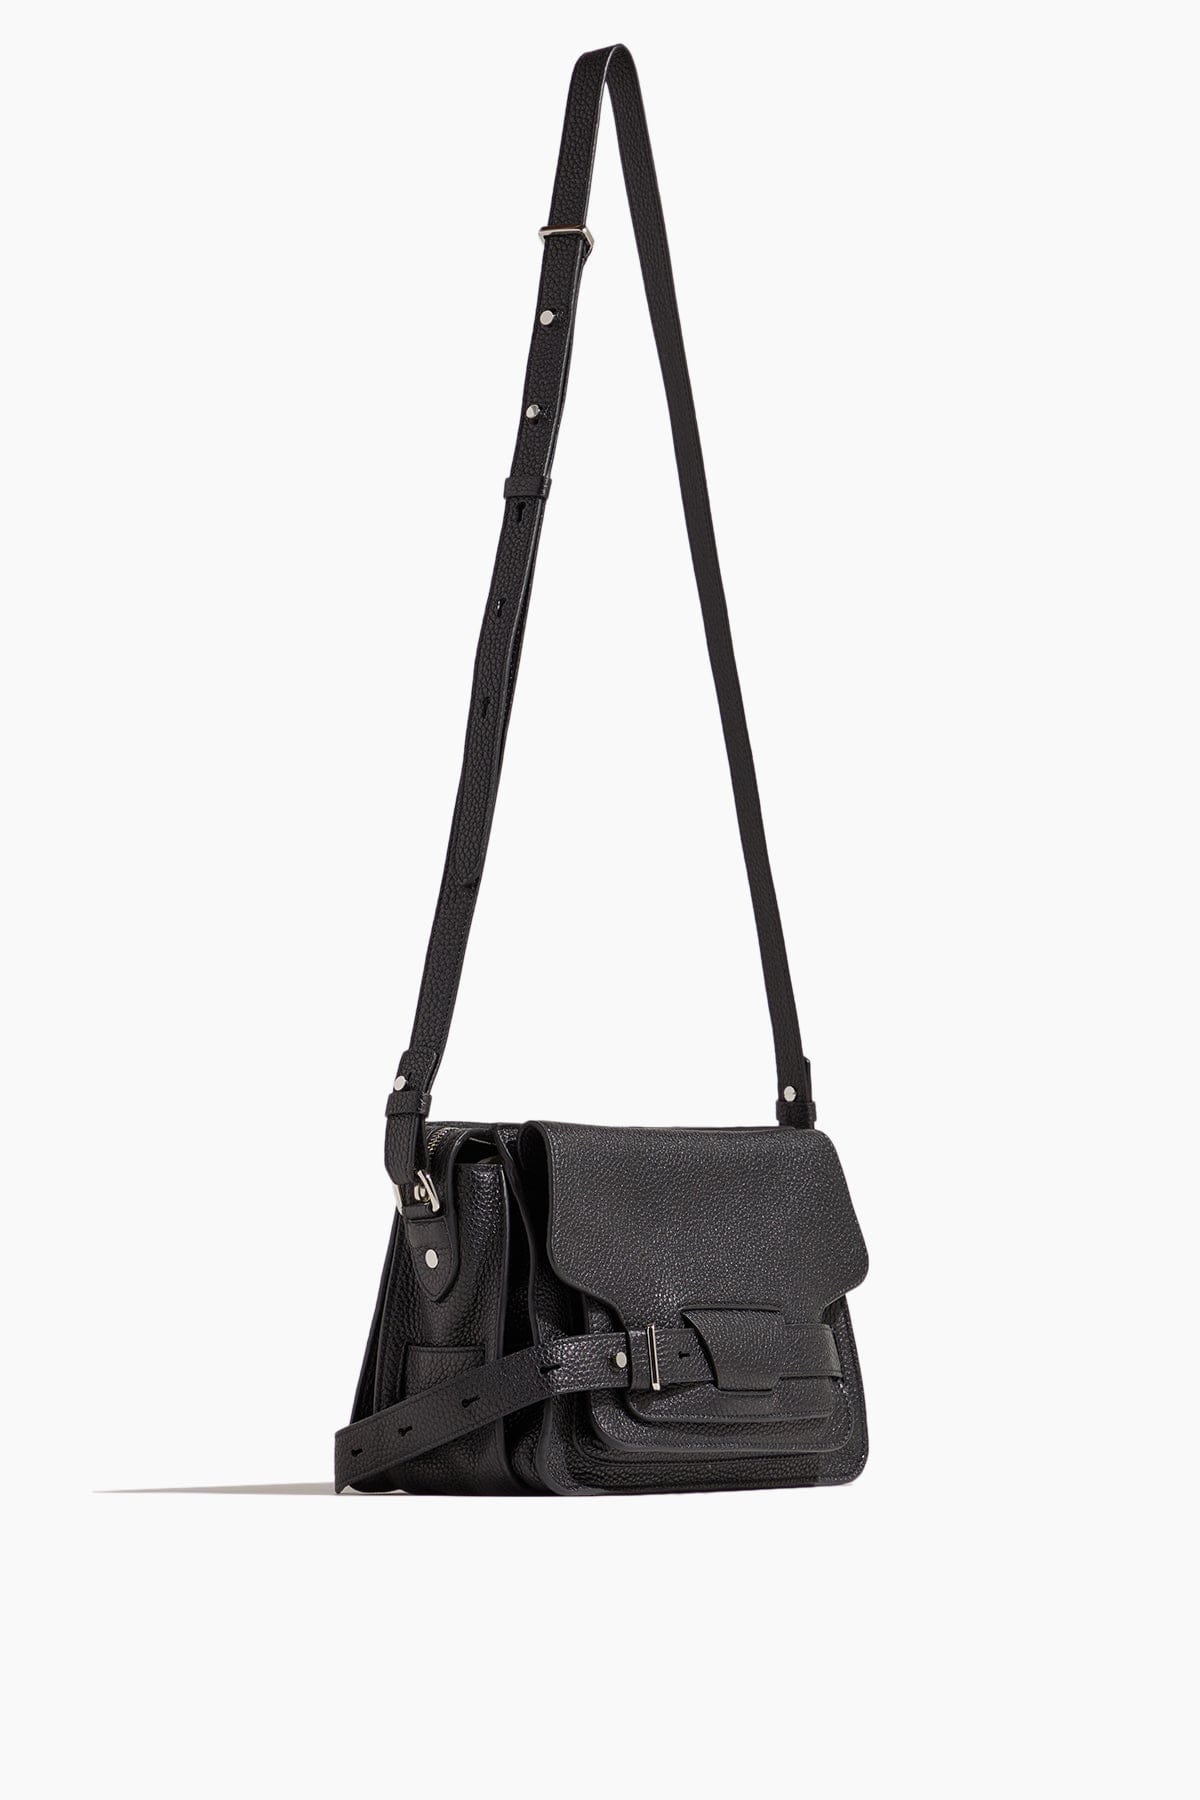 Proenza Schouler Handbags Cross Body Bags Beacon Saddle Bag in Black Proenza Schouler Beacon Saddle Bag in Black